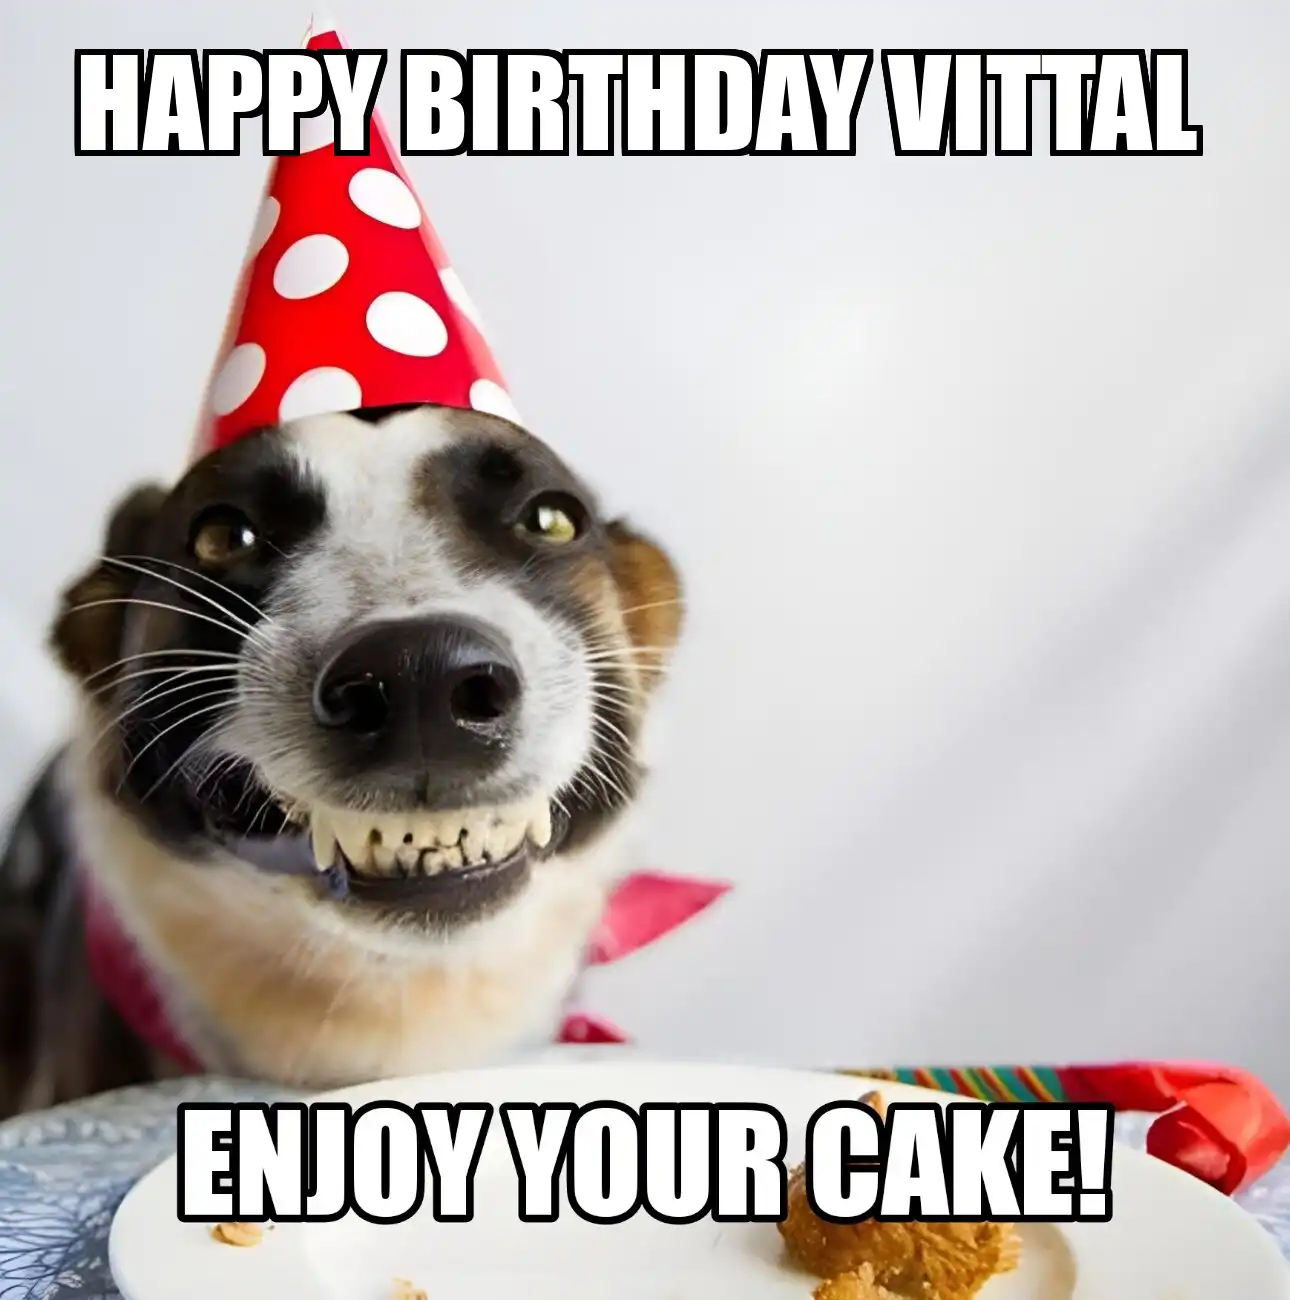 Happy Birthday Vittal Enjoy Your Cake Dog Meme